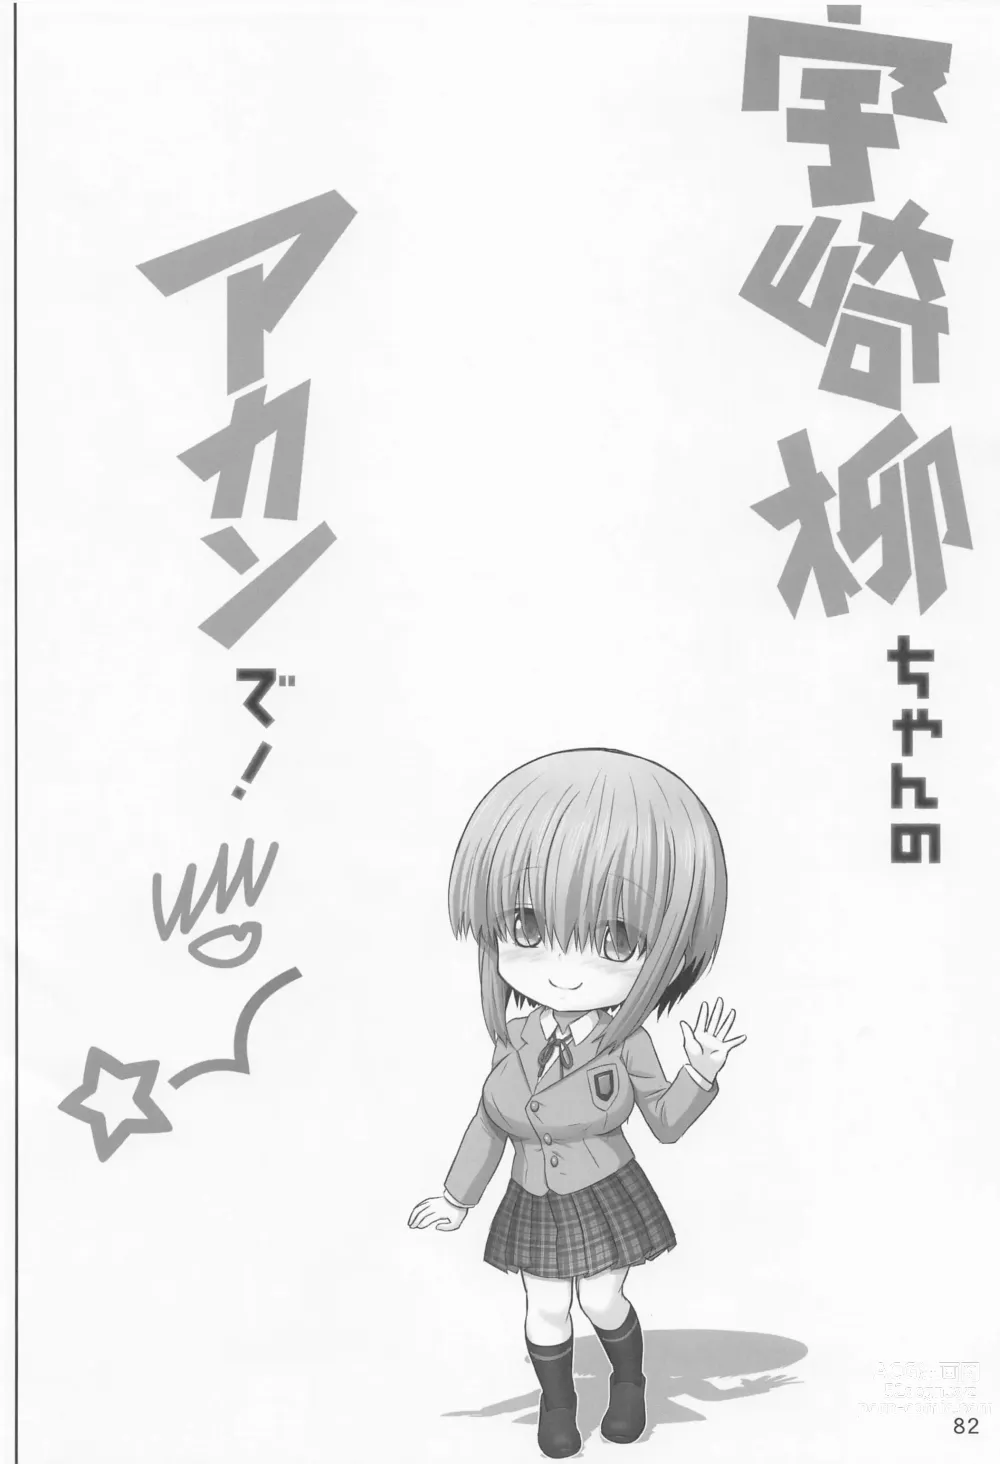 Page 81 of doujinshi Uzaki-chan no Soushuuhen yade!